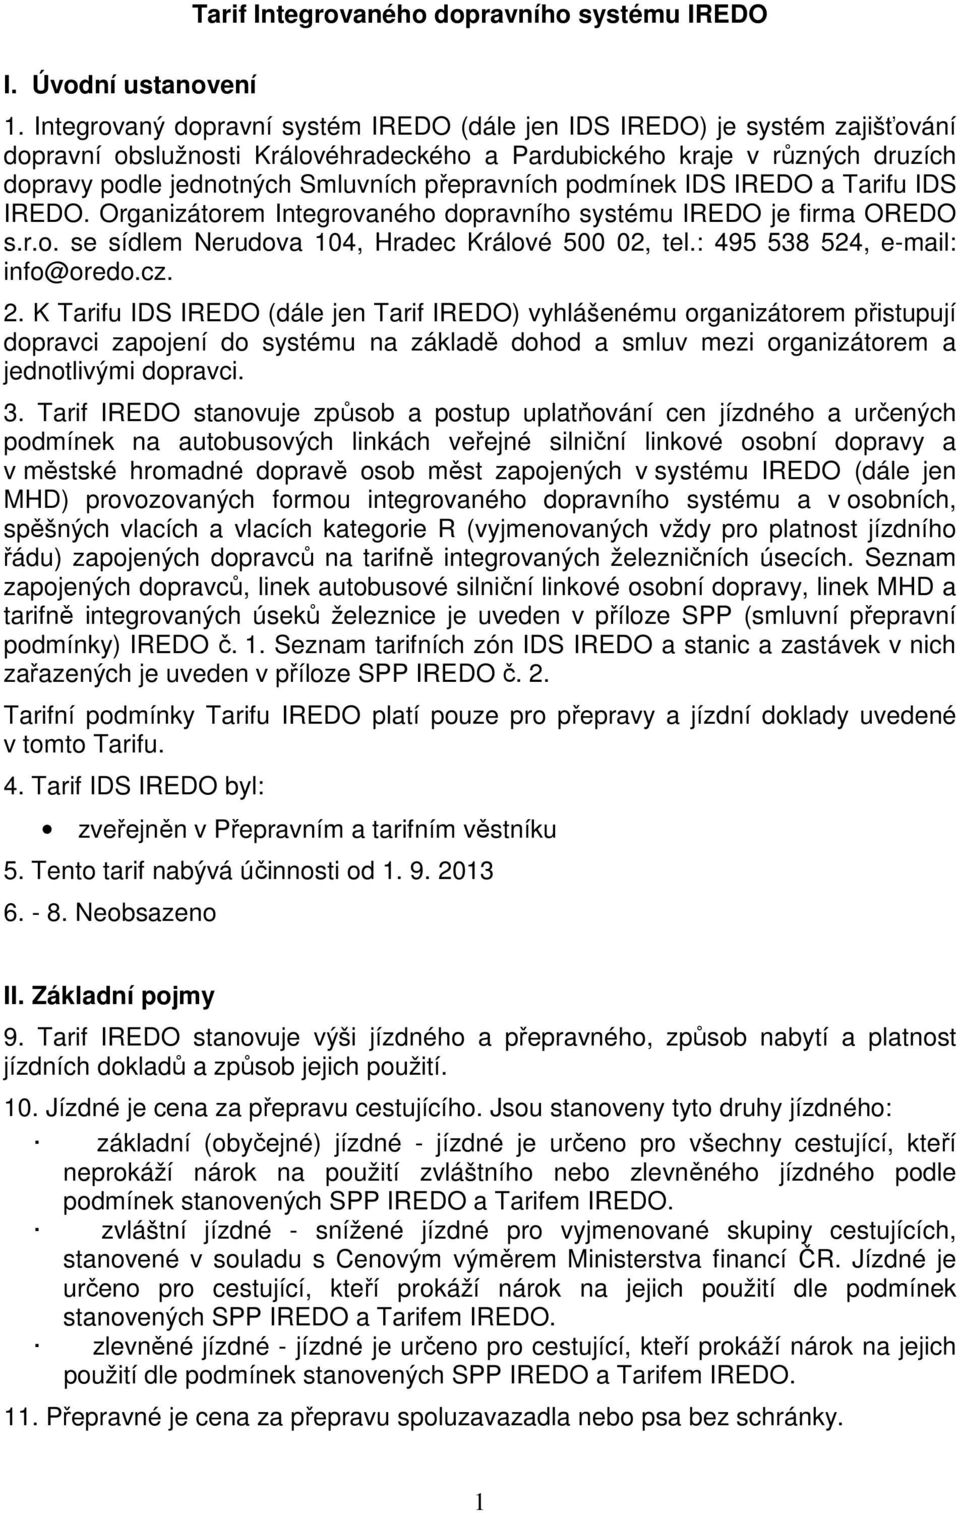 přepravních podmínek IDS IREDO a Tarifu IDS IREDO. Organizátorem Integrovaného dopravního systému IREDO je firma OREDO s.r.o. se sídlem Nerudova 104, Hradec Králové 500 02, tel.